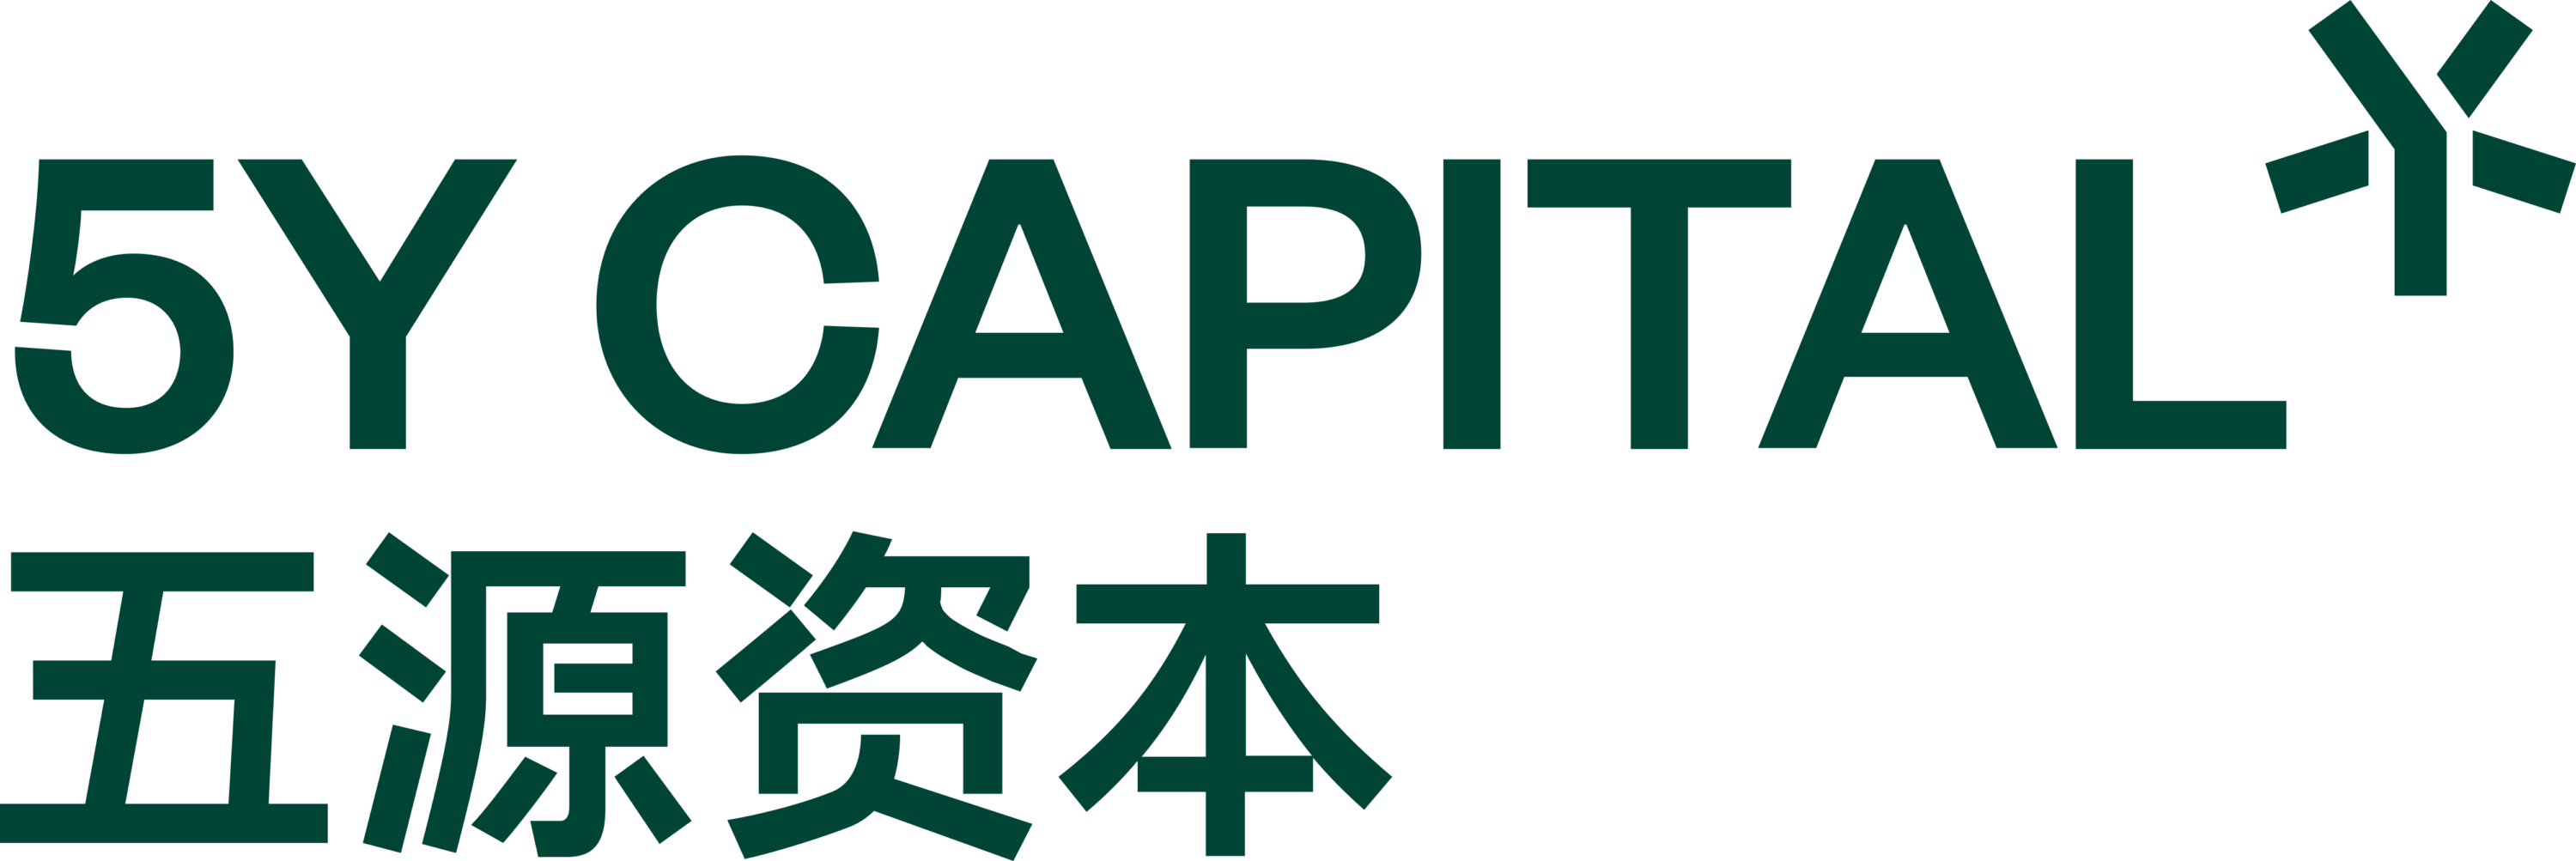 5Y Capital Logo